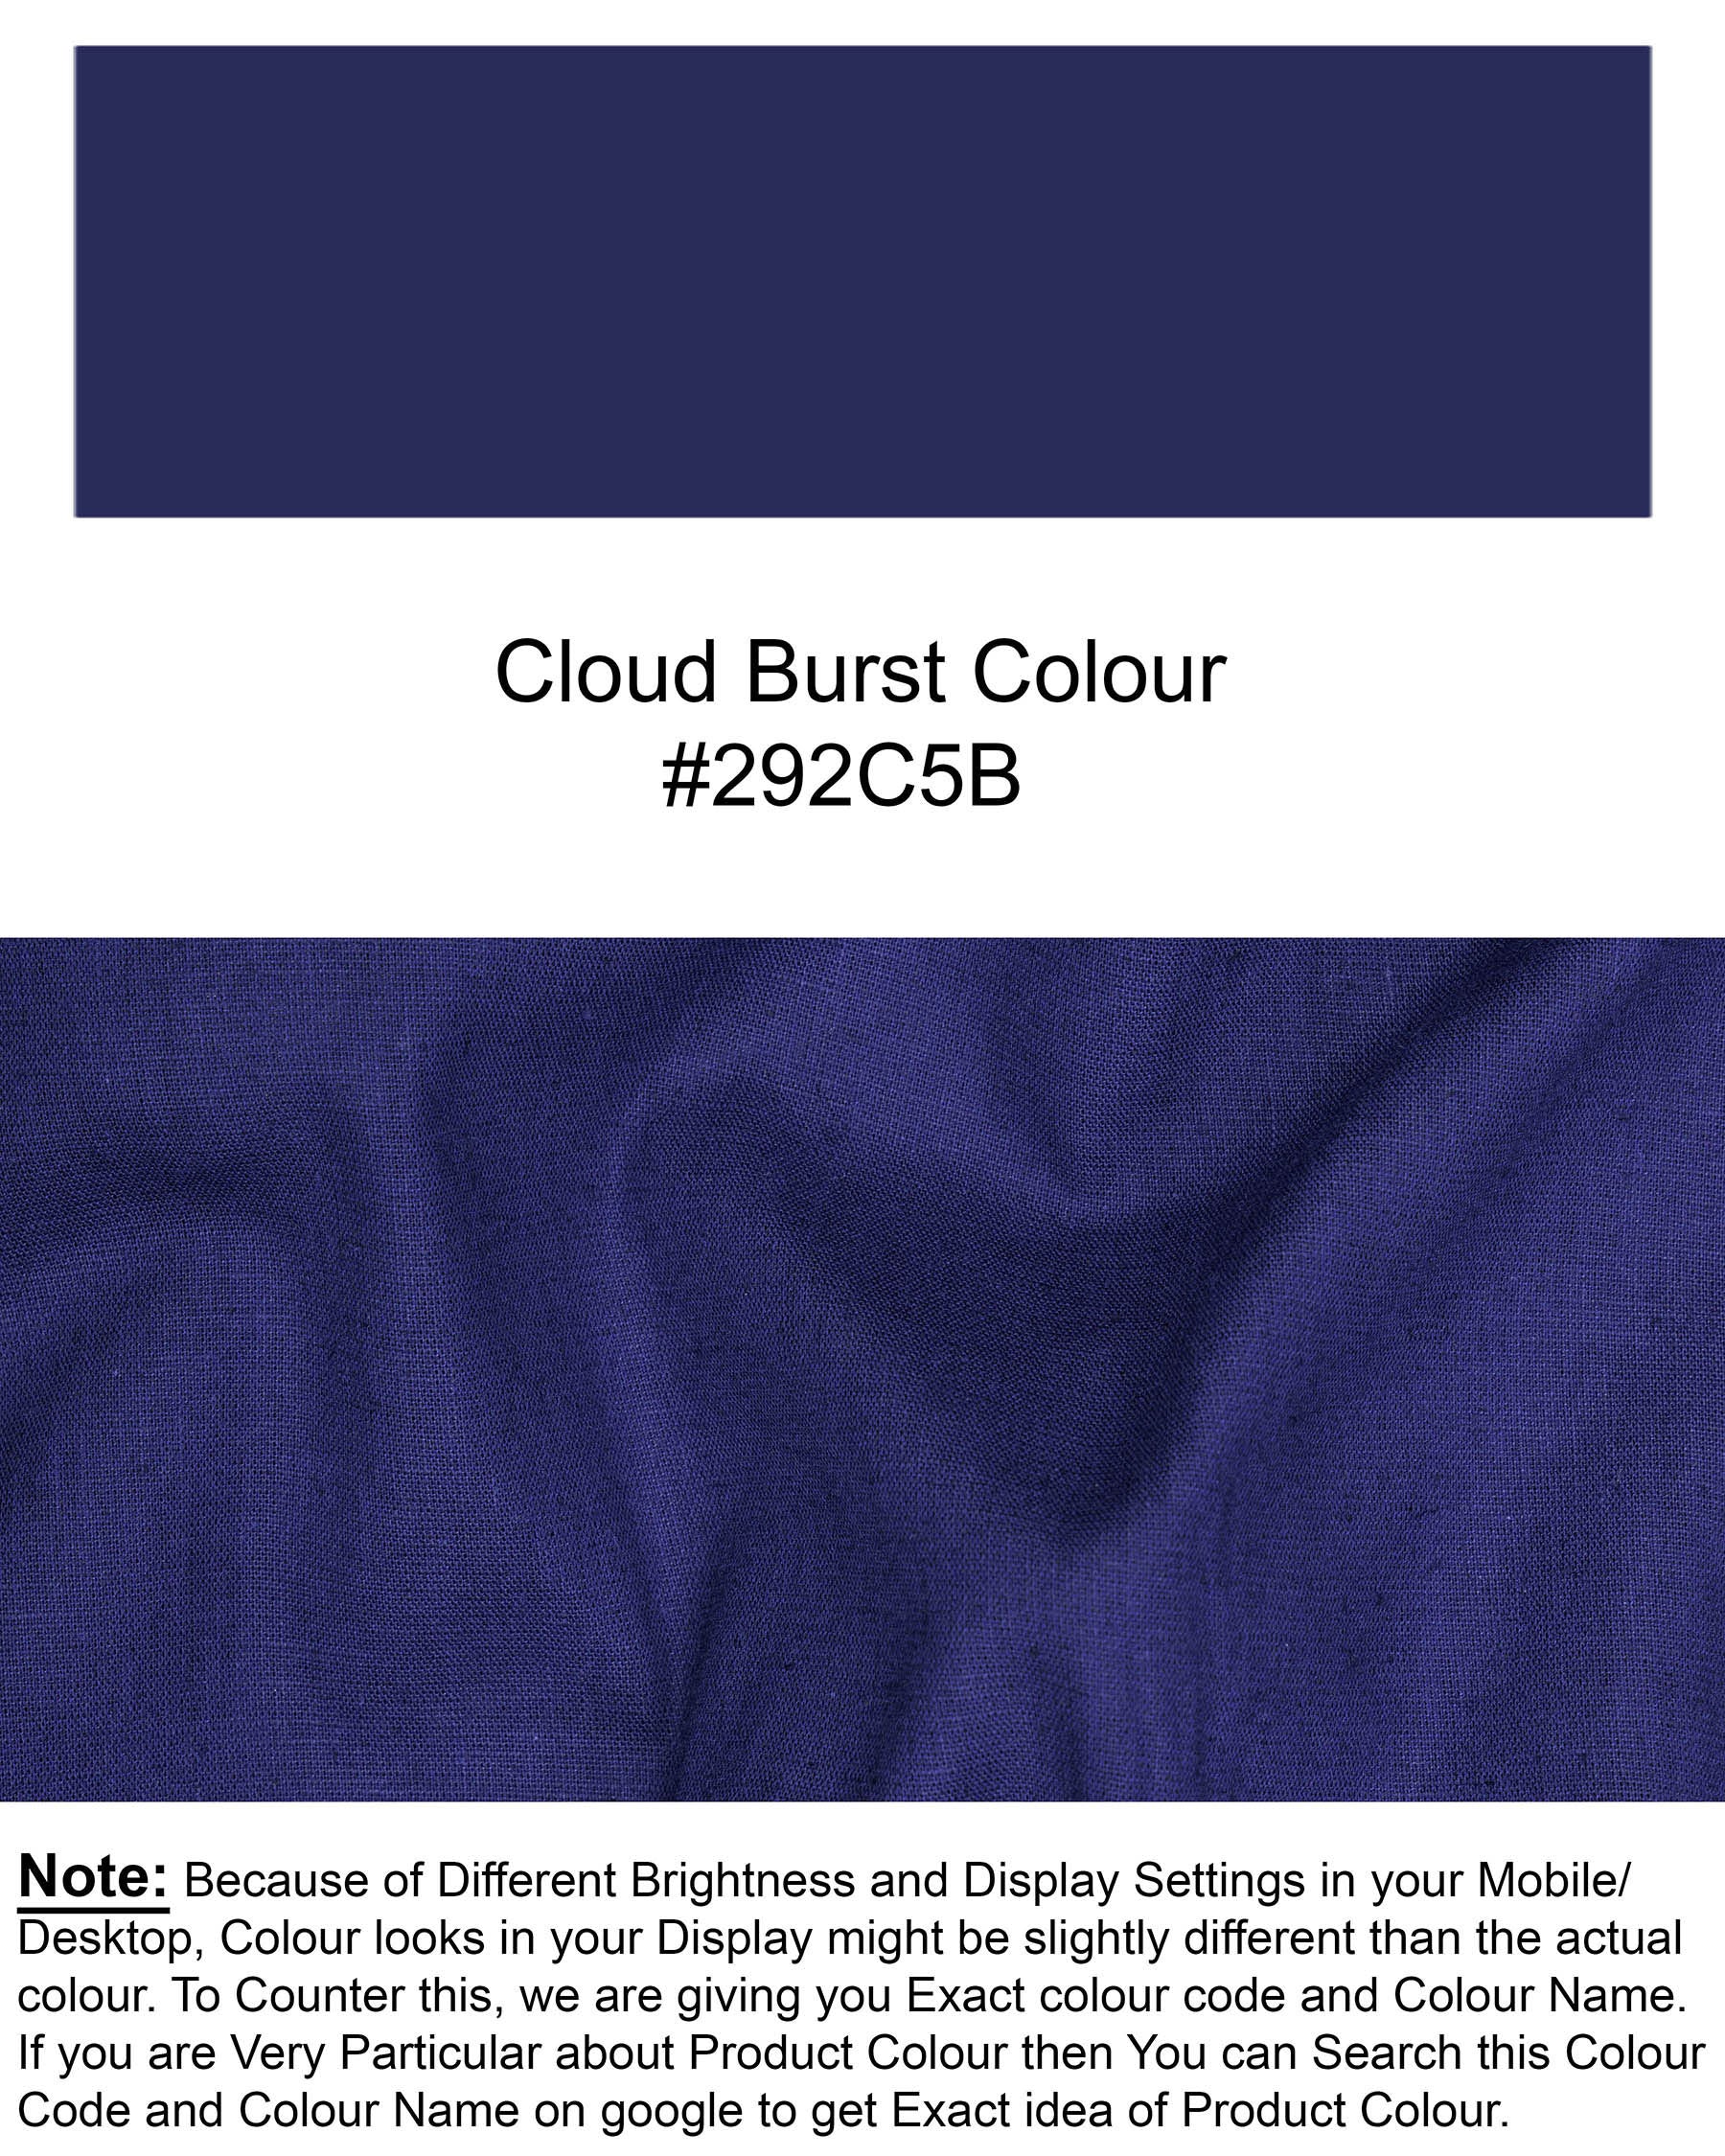 Cloud Burst Blue Pleated Luxurious Linen Shirt 6800-TXD-38,6800-TXD-38,6800-TXD-39,6800-TXD-39,6800-TXD-40,6800-TXD-40,6800-TXD-42,6800-TXD-42,6800-TXD-44,6800-TXD-44,6800-TXD-46,6800-TXD-46,6800-TXD-48,6800-TXD-48,6800-TXD-50,6800-TXD-50,6800-TXD-52,6800-TXD-52